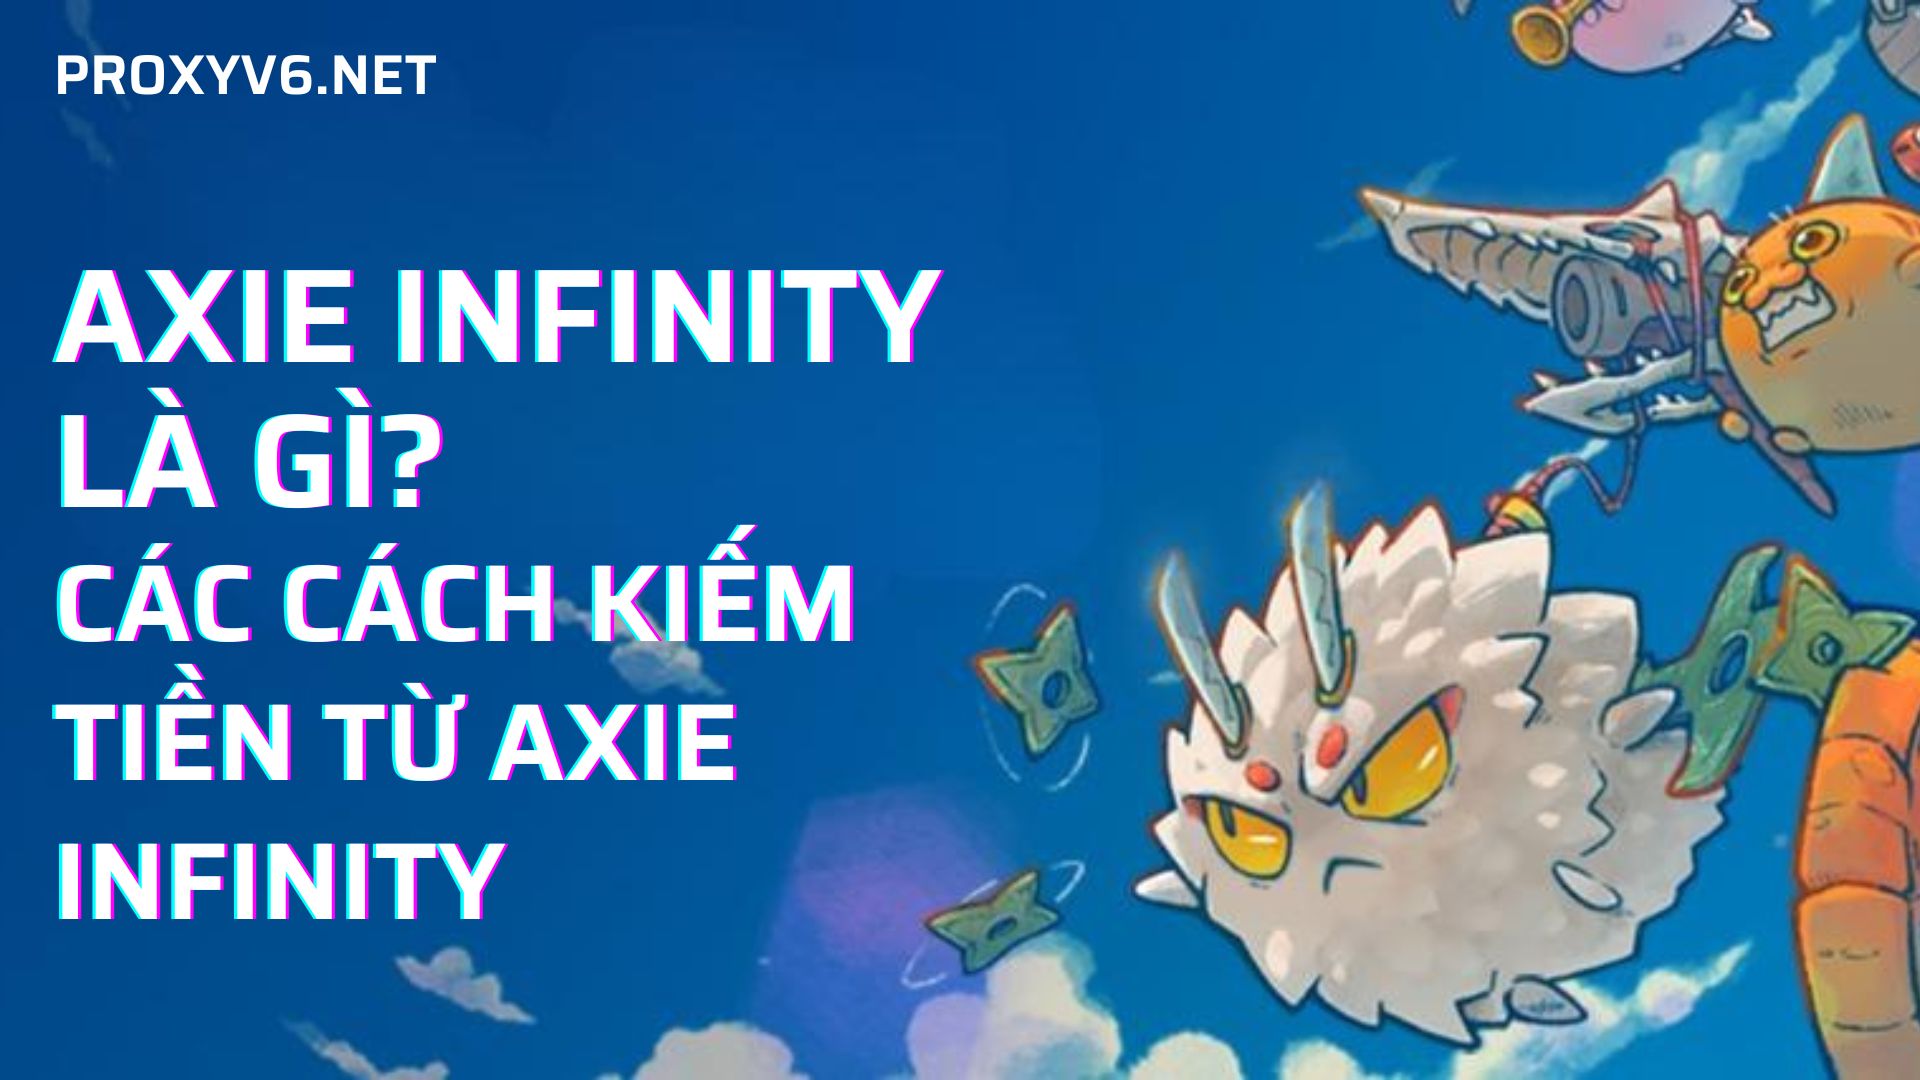 Axie Infinity là gì? Các cách kiếm tiền từ Axie Infinity